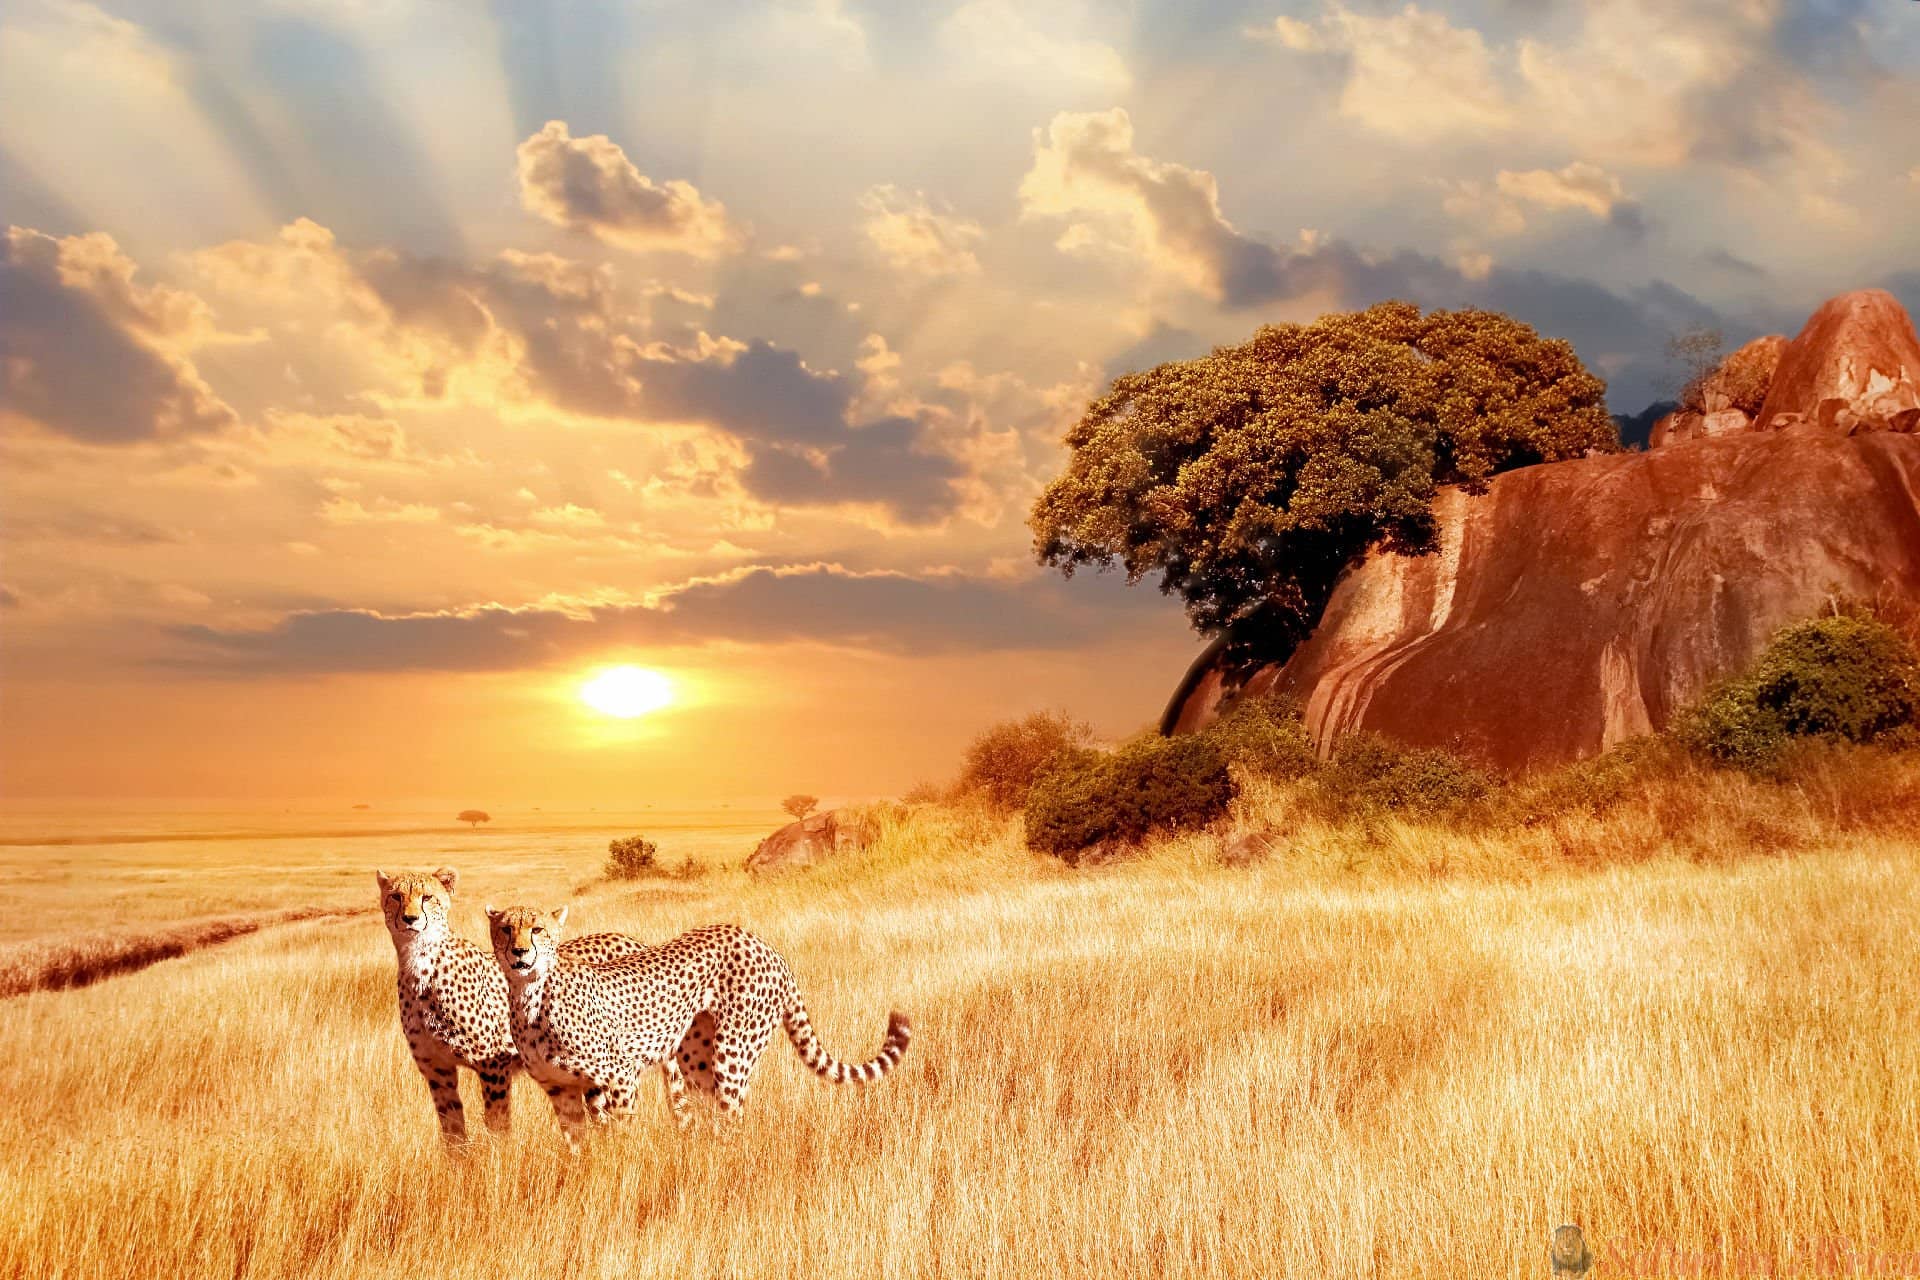 cheetahs-in-de-afrikaanse-savanne-tegen-de-achtergrond-van-een-prachtige-zonsondergang-nationaal-park-serengeti-tanzania